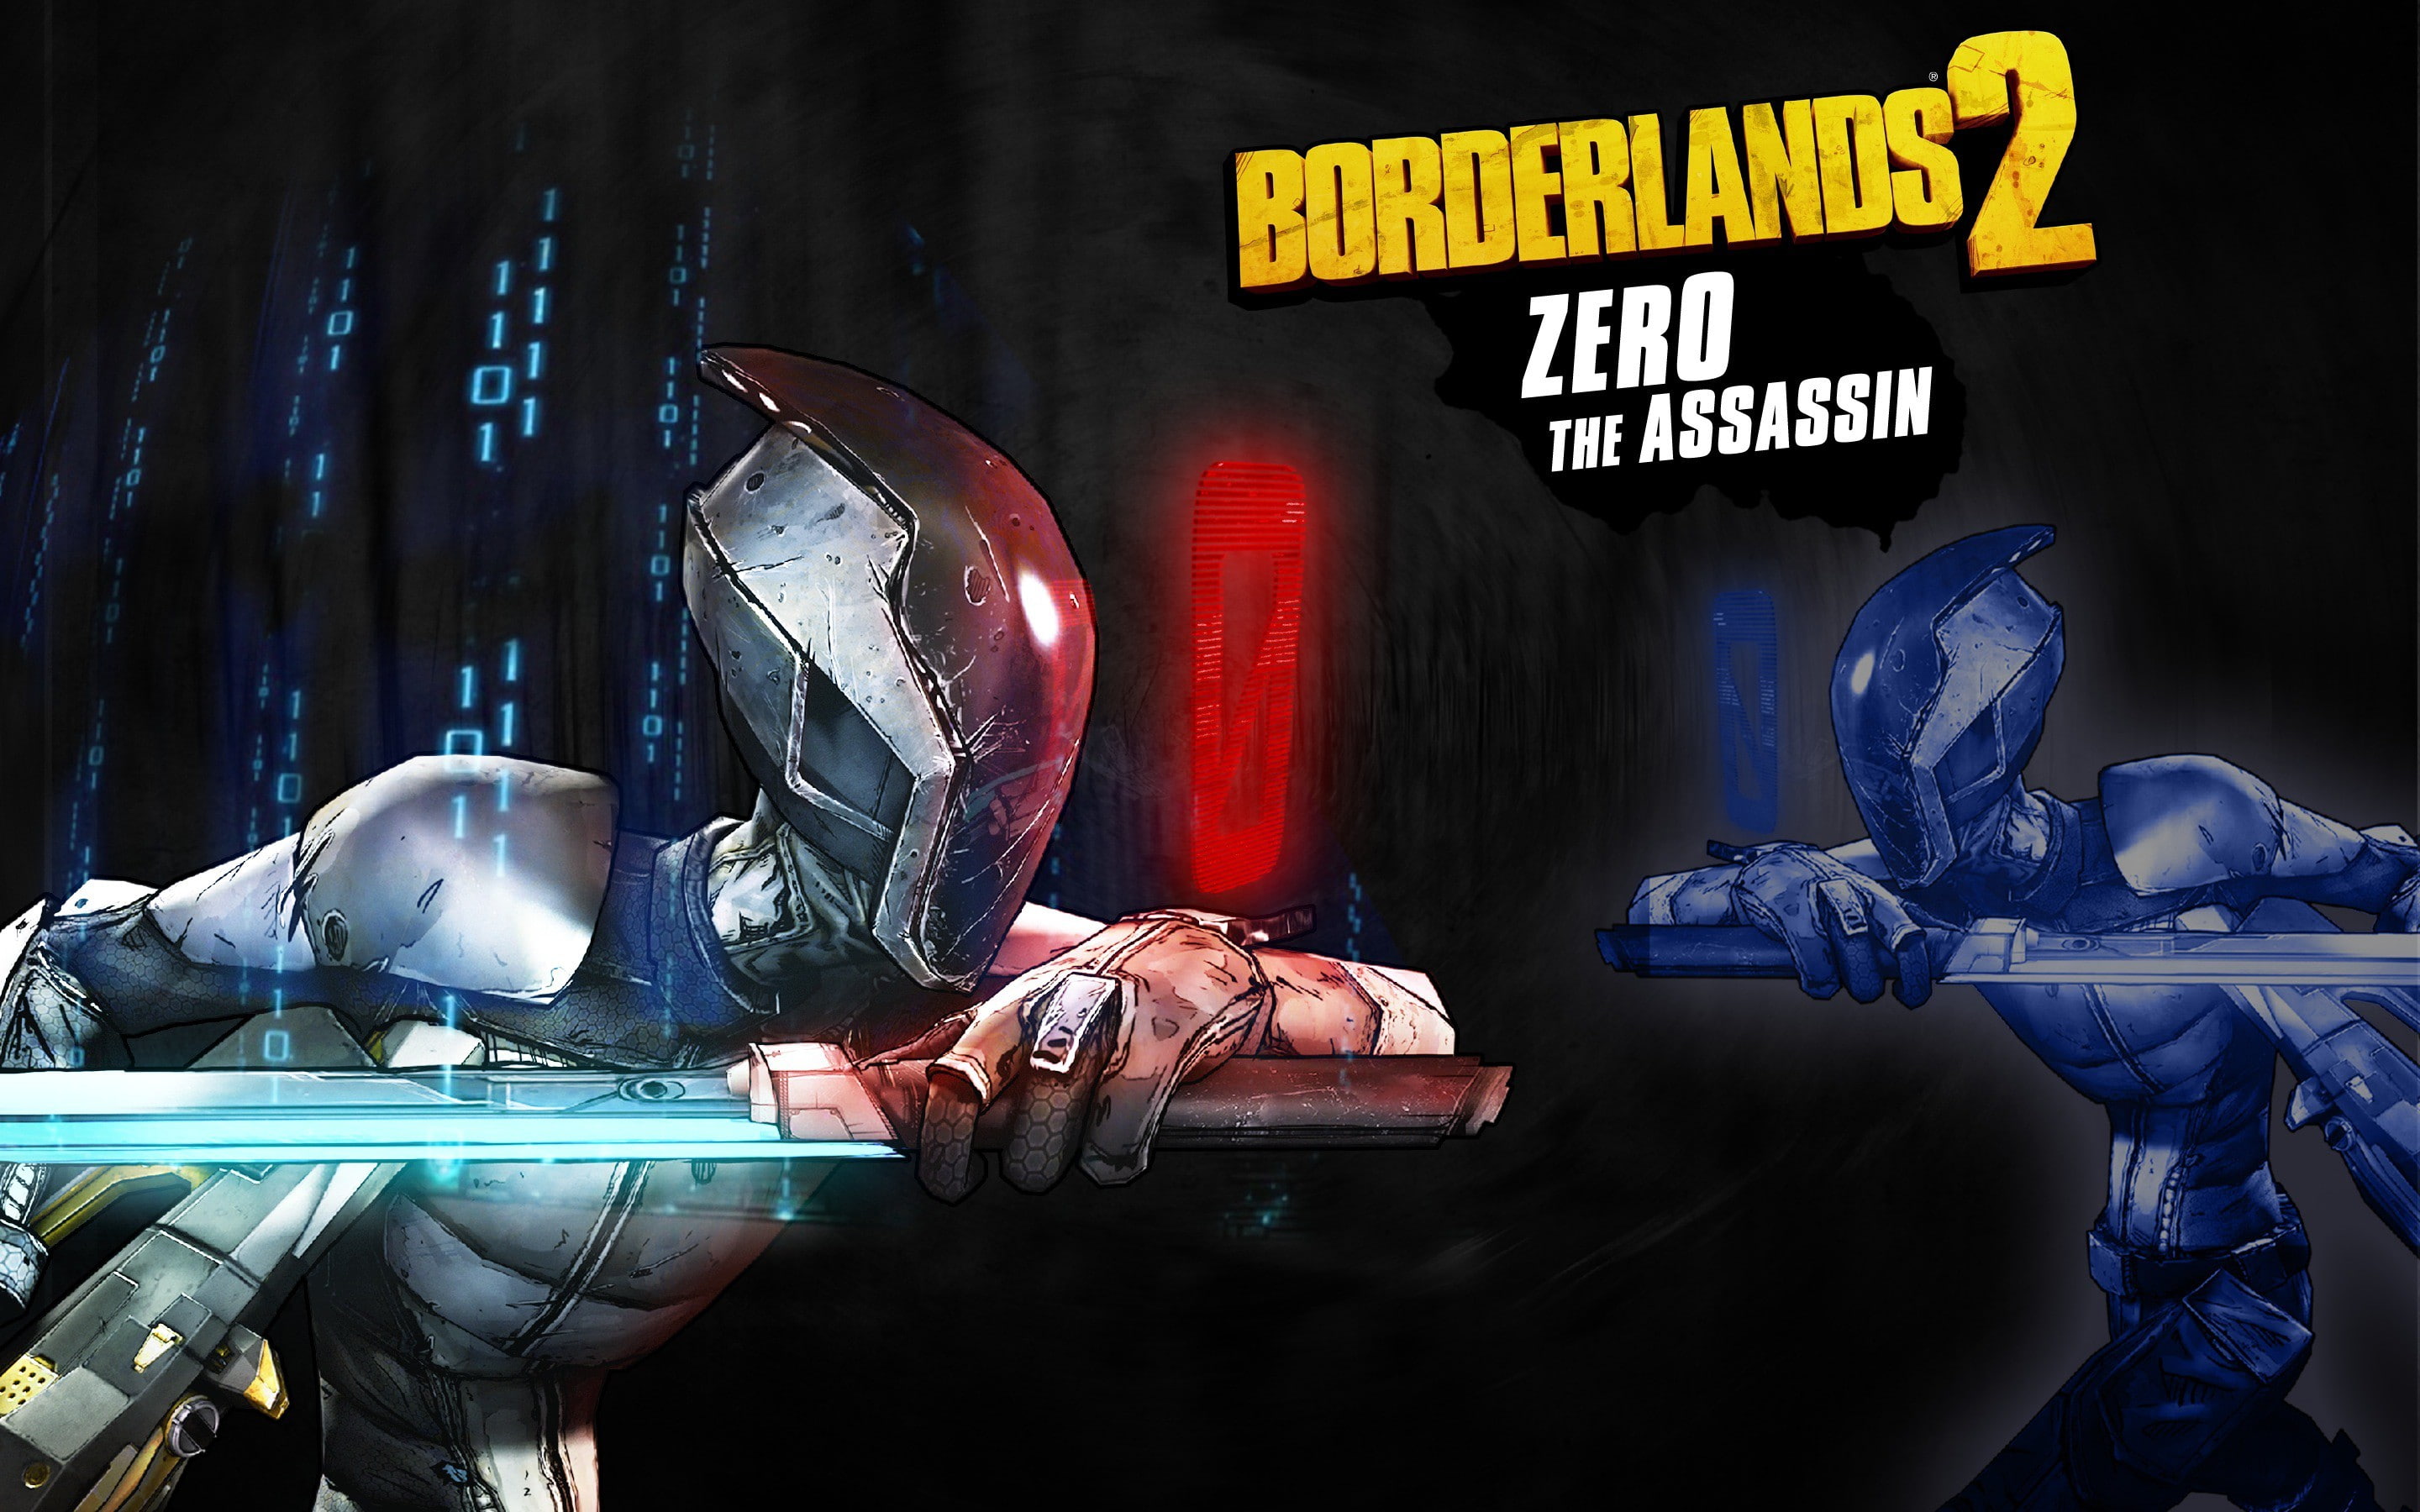 Borderlands 2, FPS, RPG, Unreal Engine 3, Gearbox Software, 2K Games